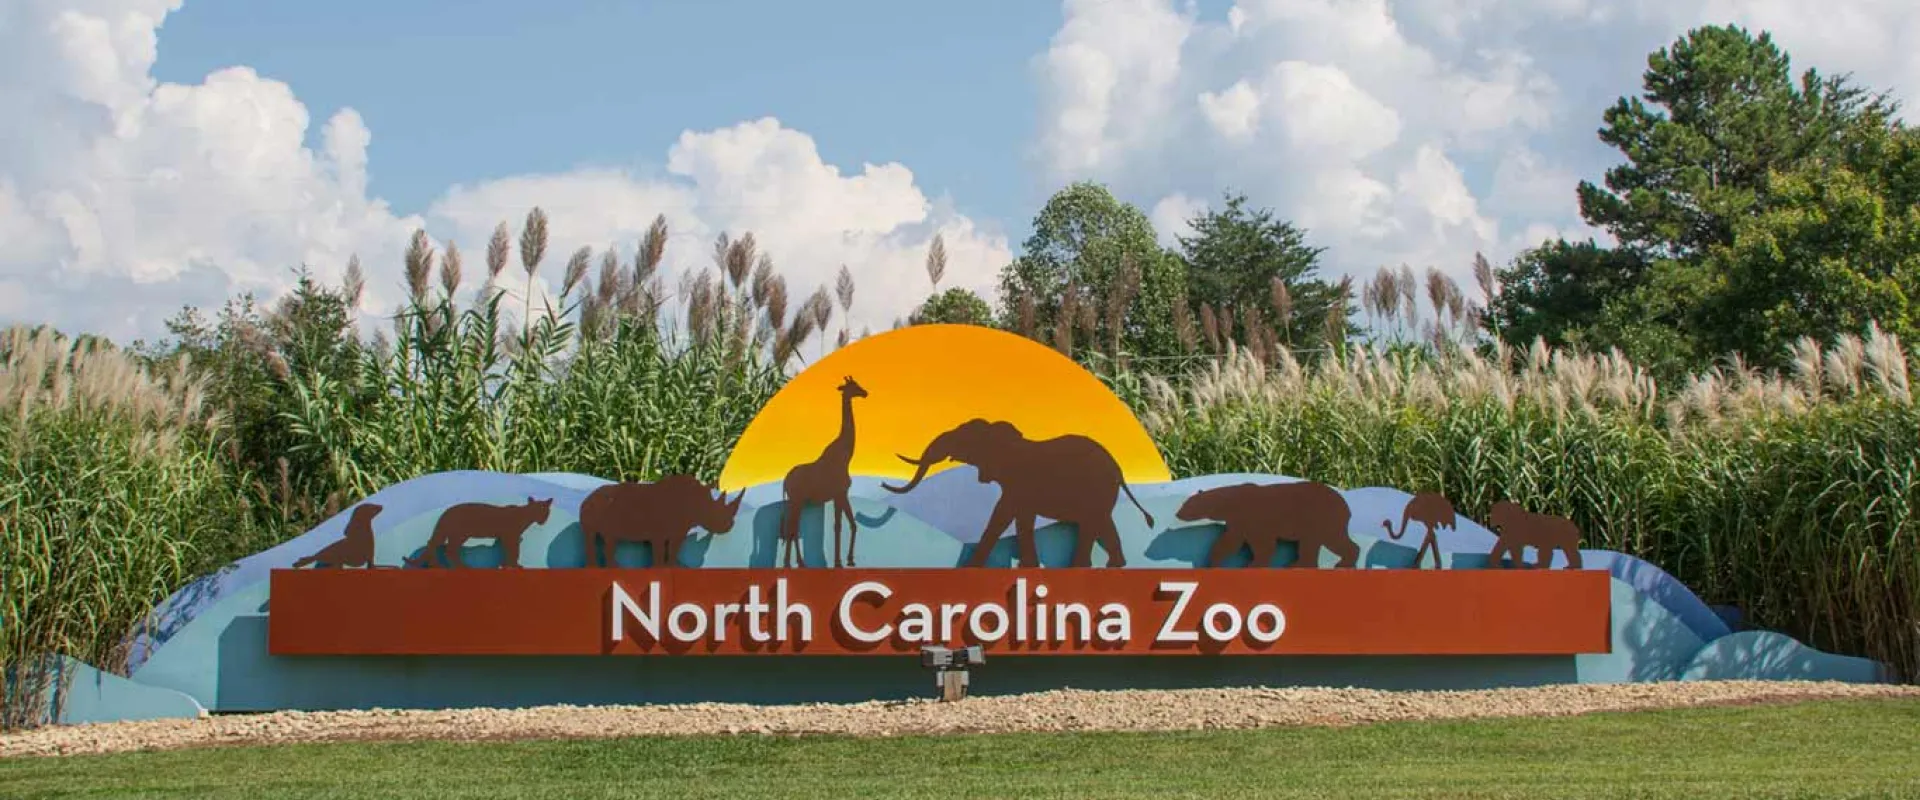 North Carolina Zoo Council Meeting Feb. 9, 2022 at 10 a.m.